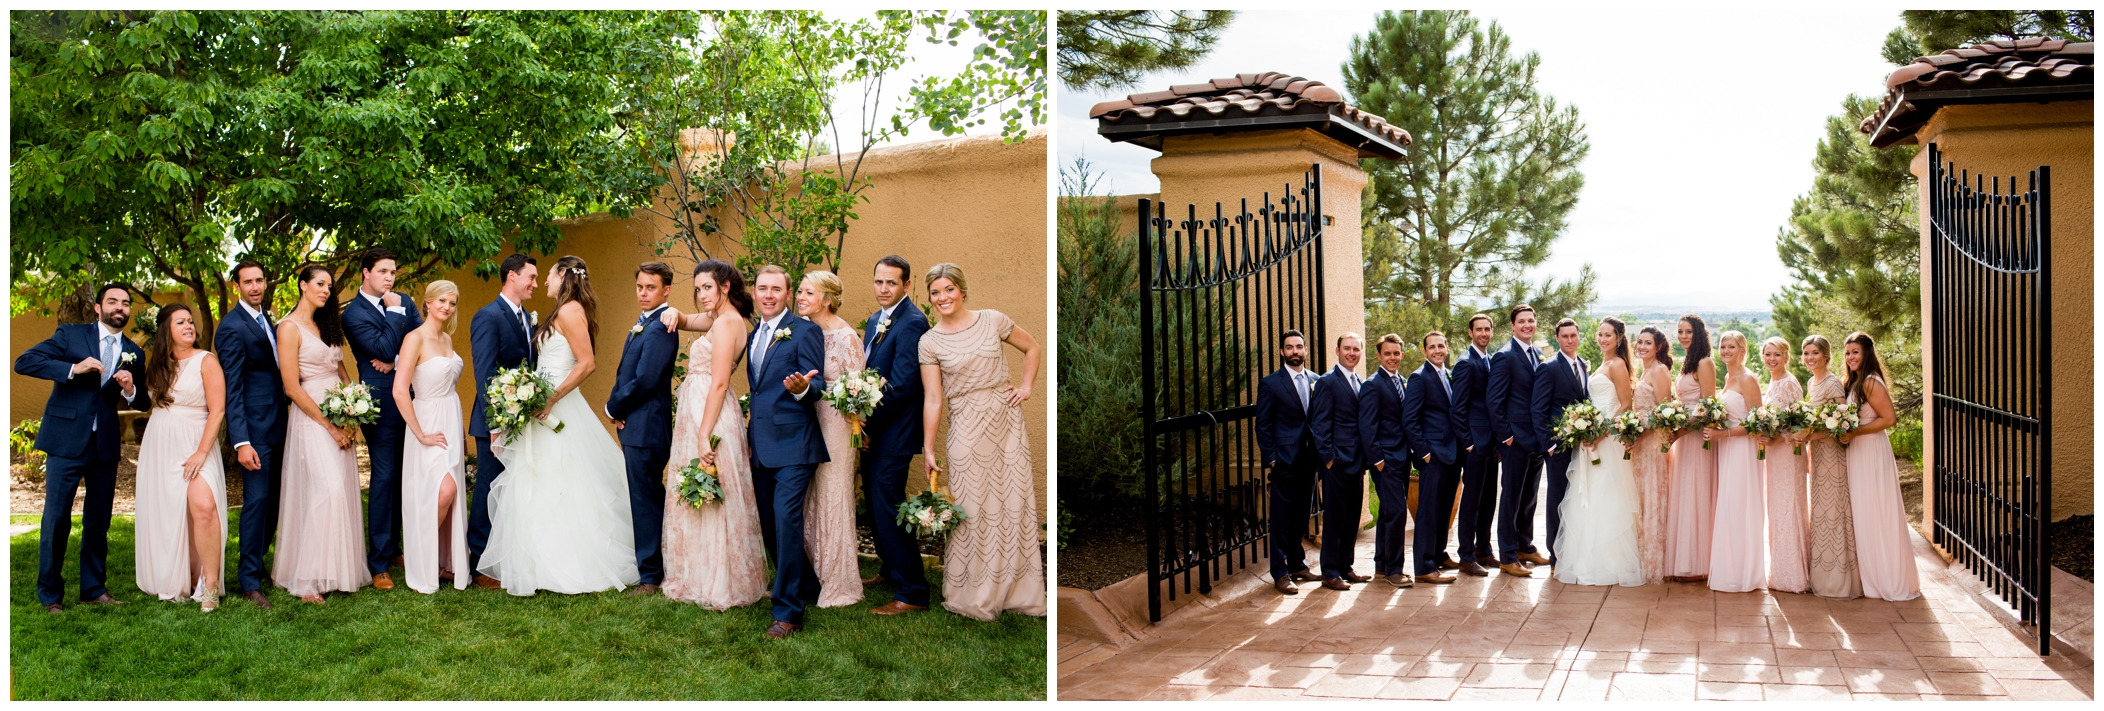 blue and pink bridal party attire at Colorado Villa Parker wedding 